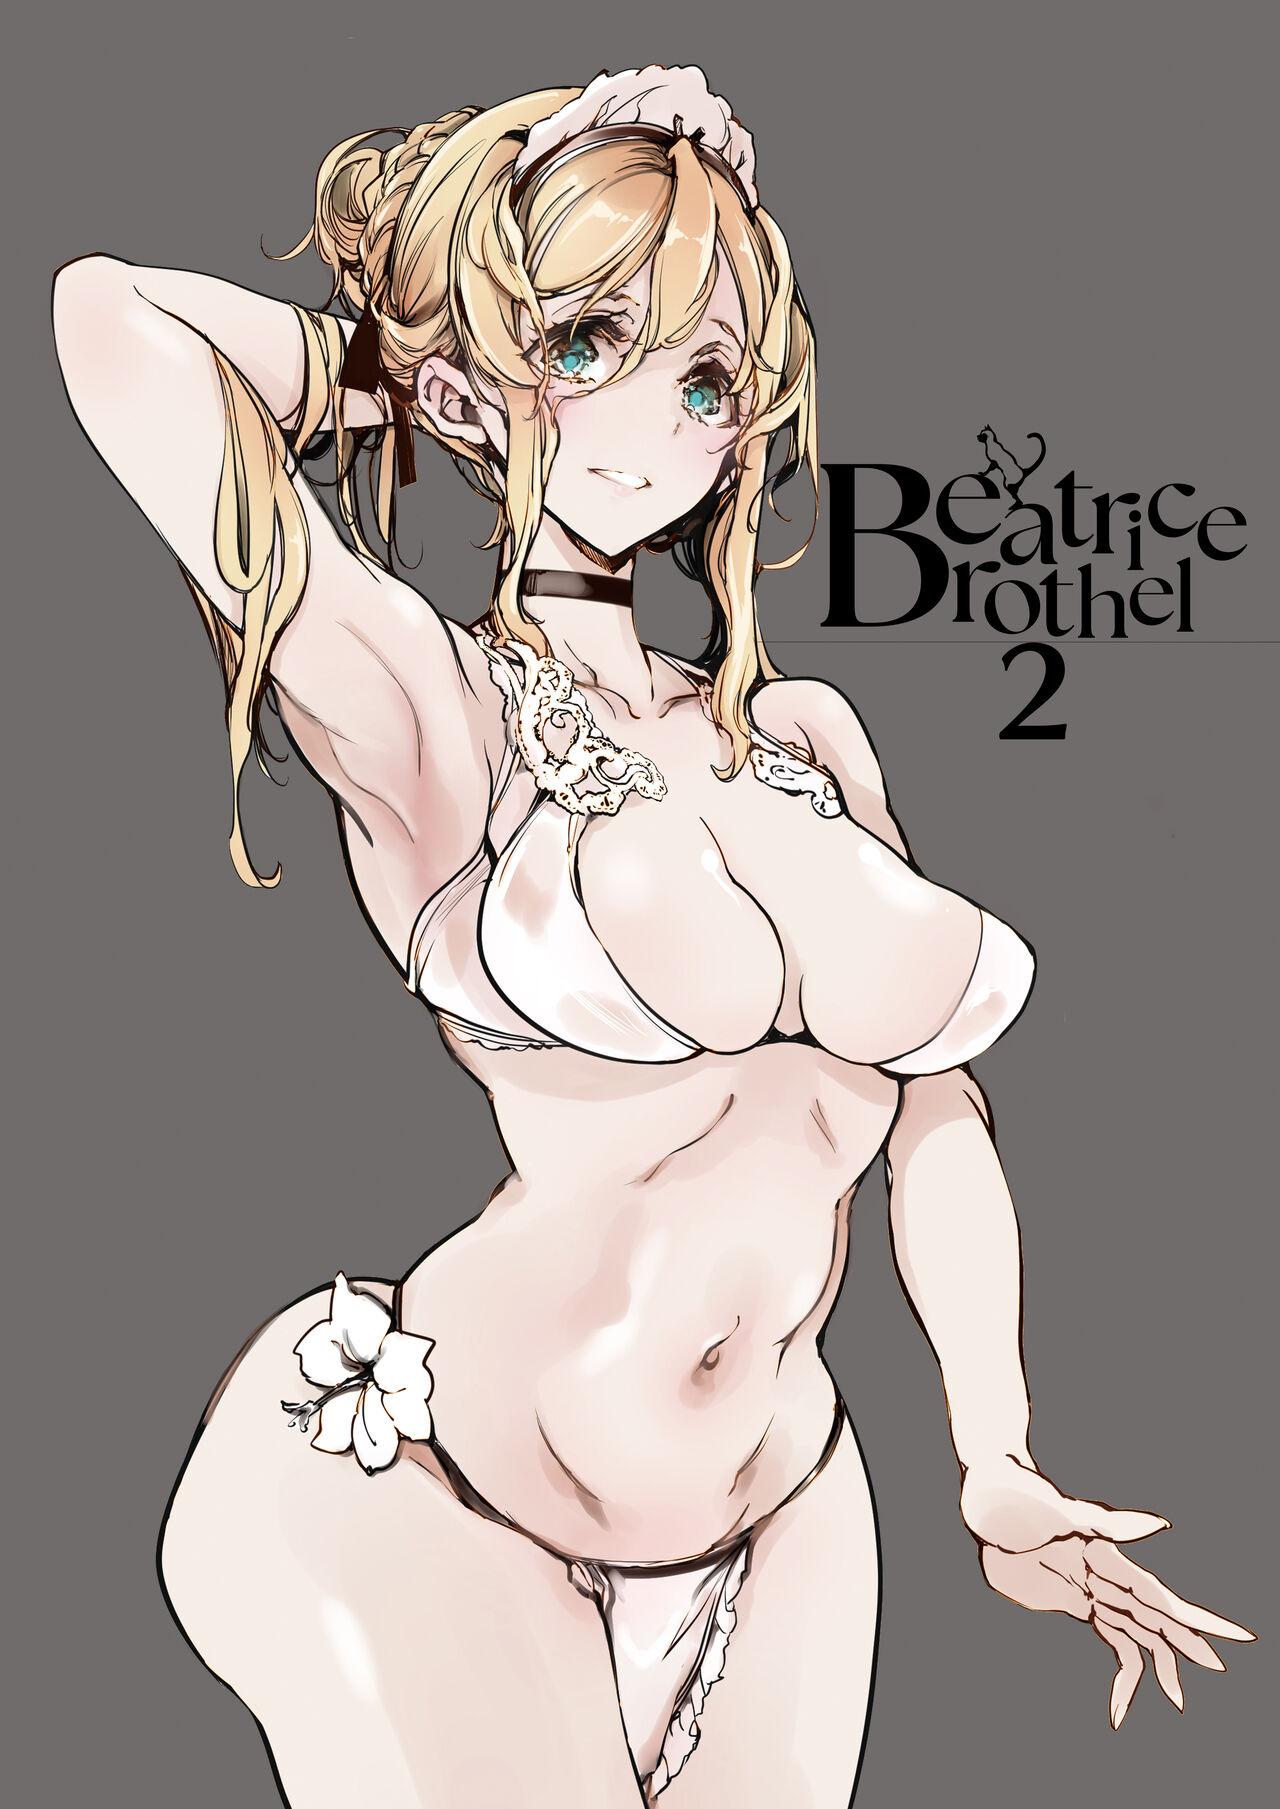 Beatrice Brothel 2 2